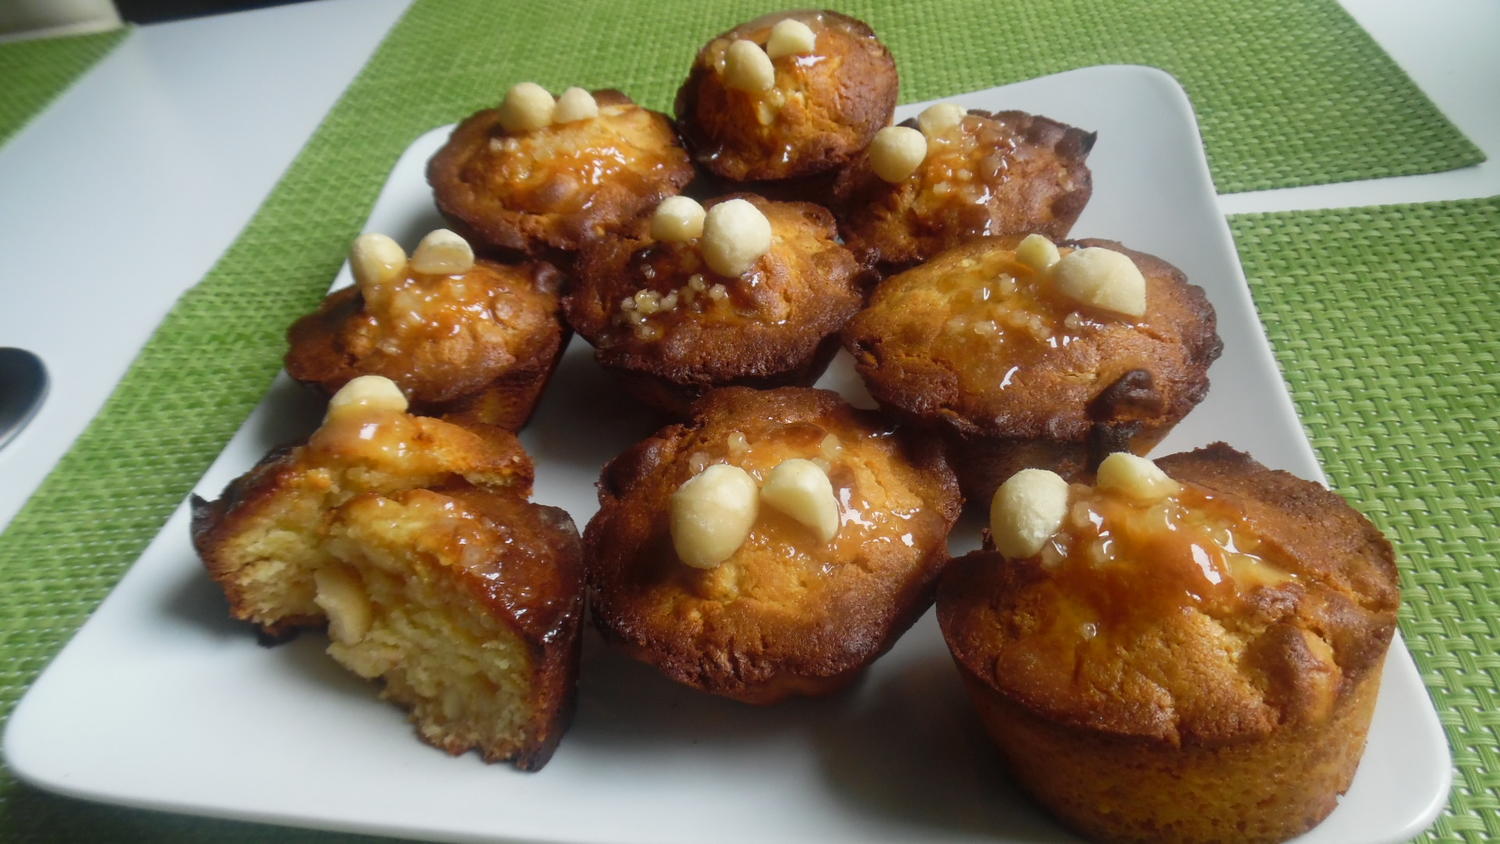 Macadamia-Muffins mit weißer Schokolade und Salzkaramell - Rezept ...